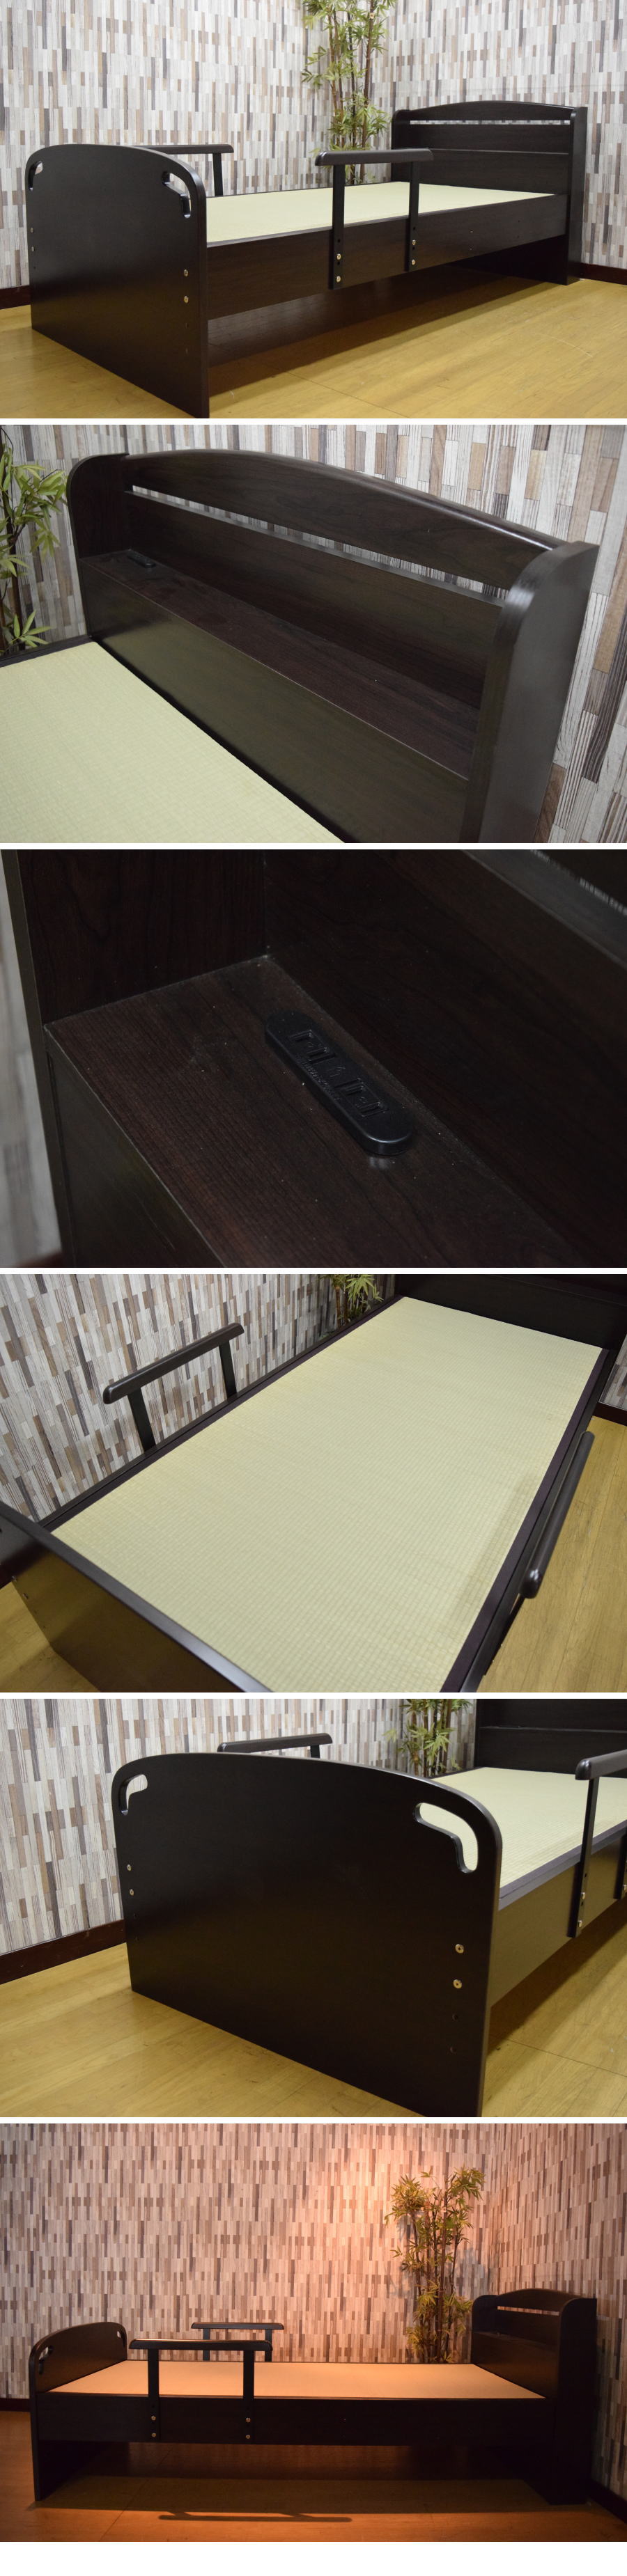 特価在庫あ日本畳 手すり付き 床面高さ3段階調整 シングルベッド 寝室 アウトレット家具 快眠N0717D5 シングル